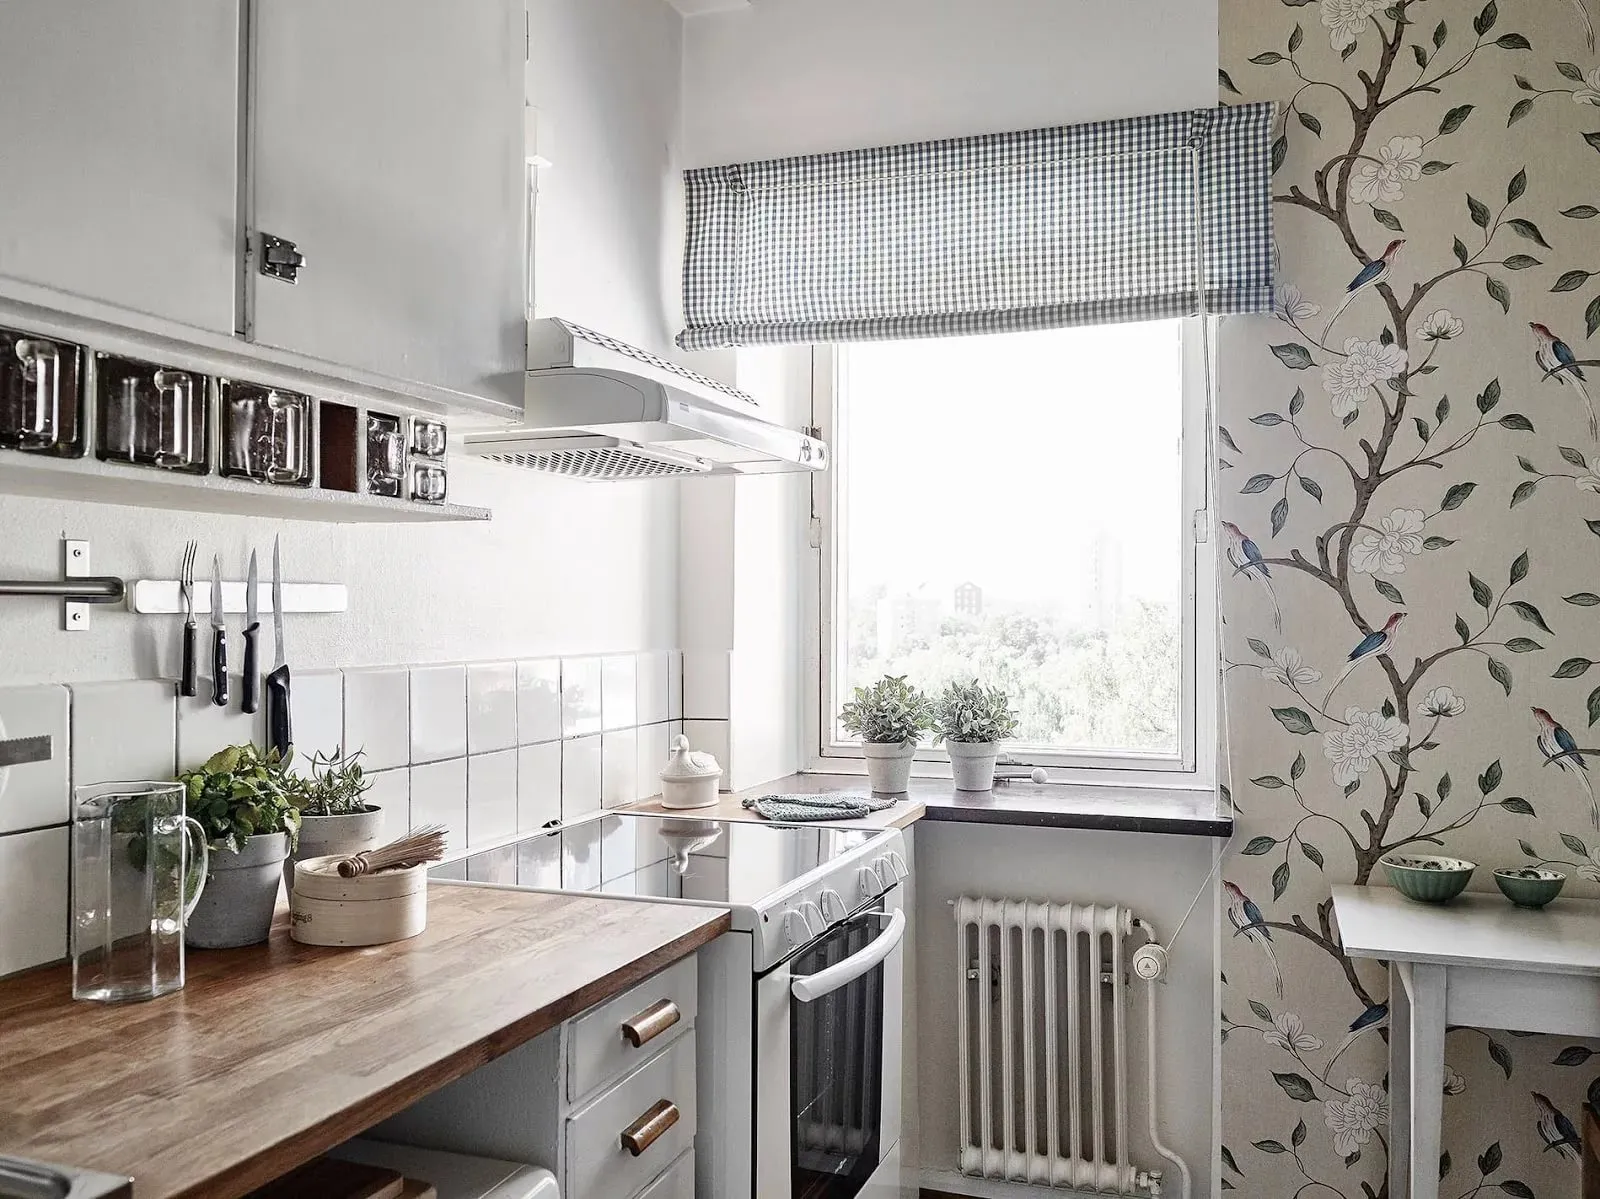 Обои для маленькой кухни в современном интерьере 2019, фото-идеи оригинальных решений